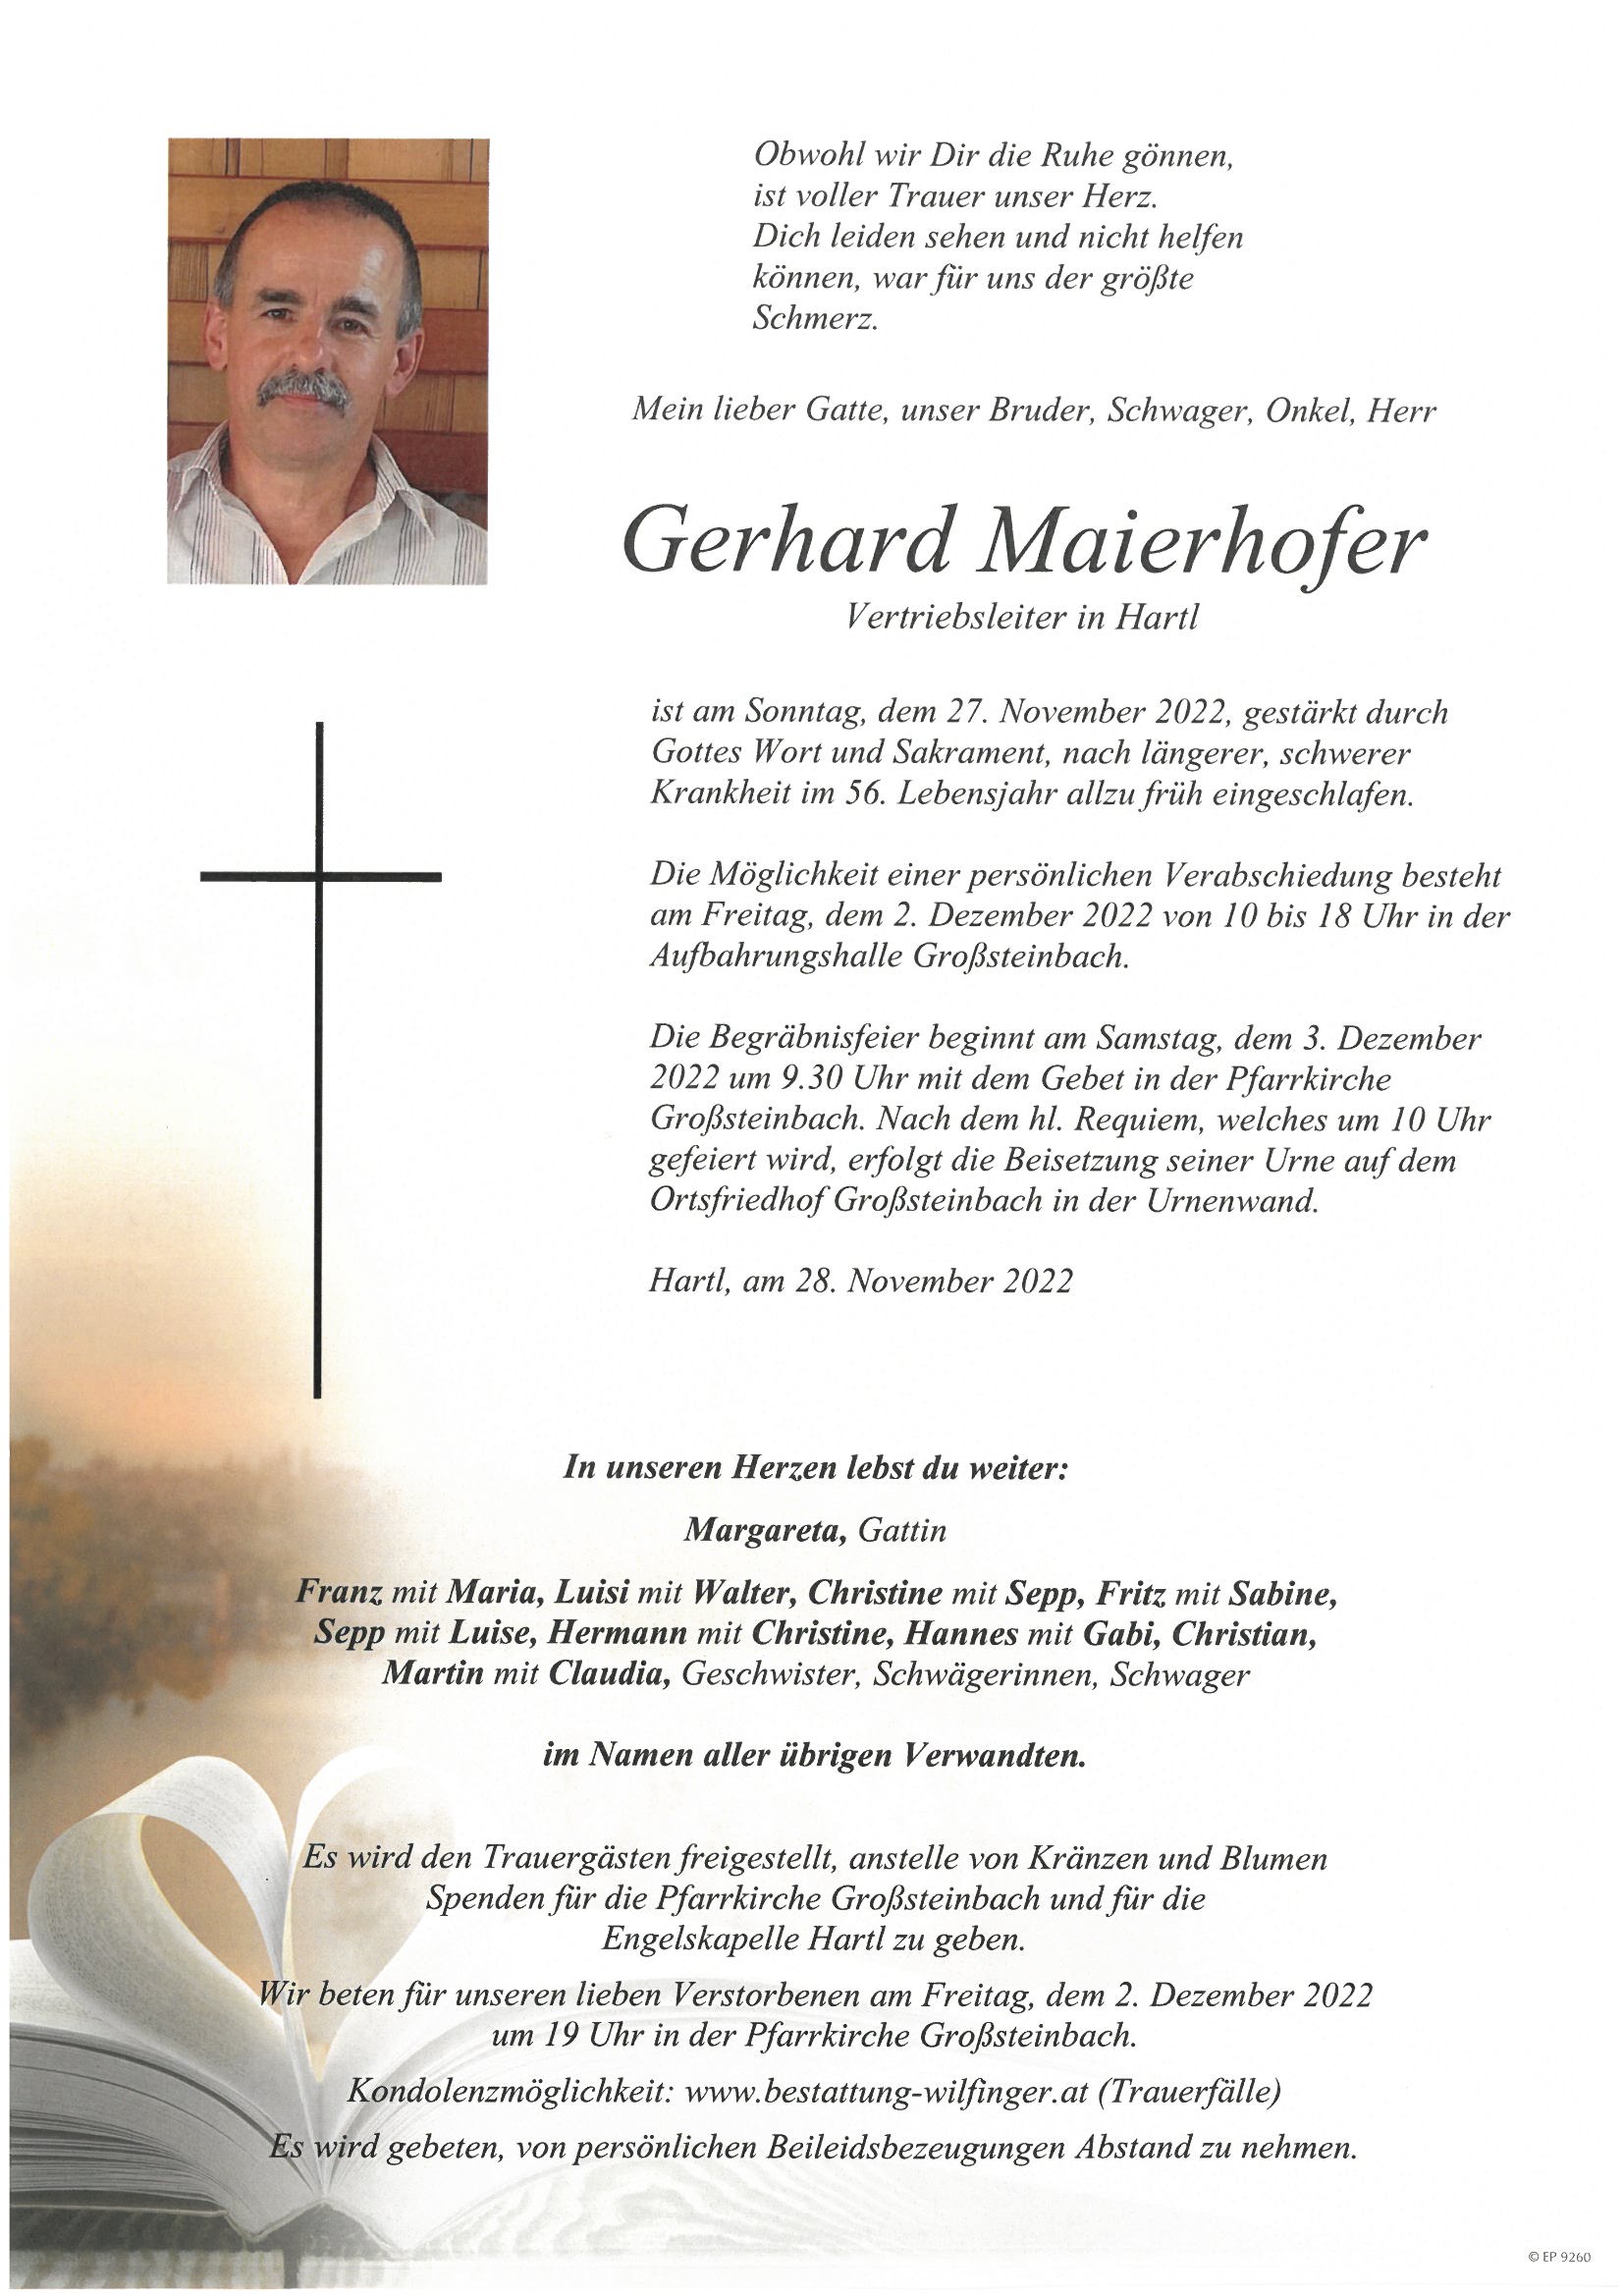 Gerhard Maierhofer, Hartl